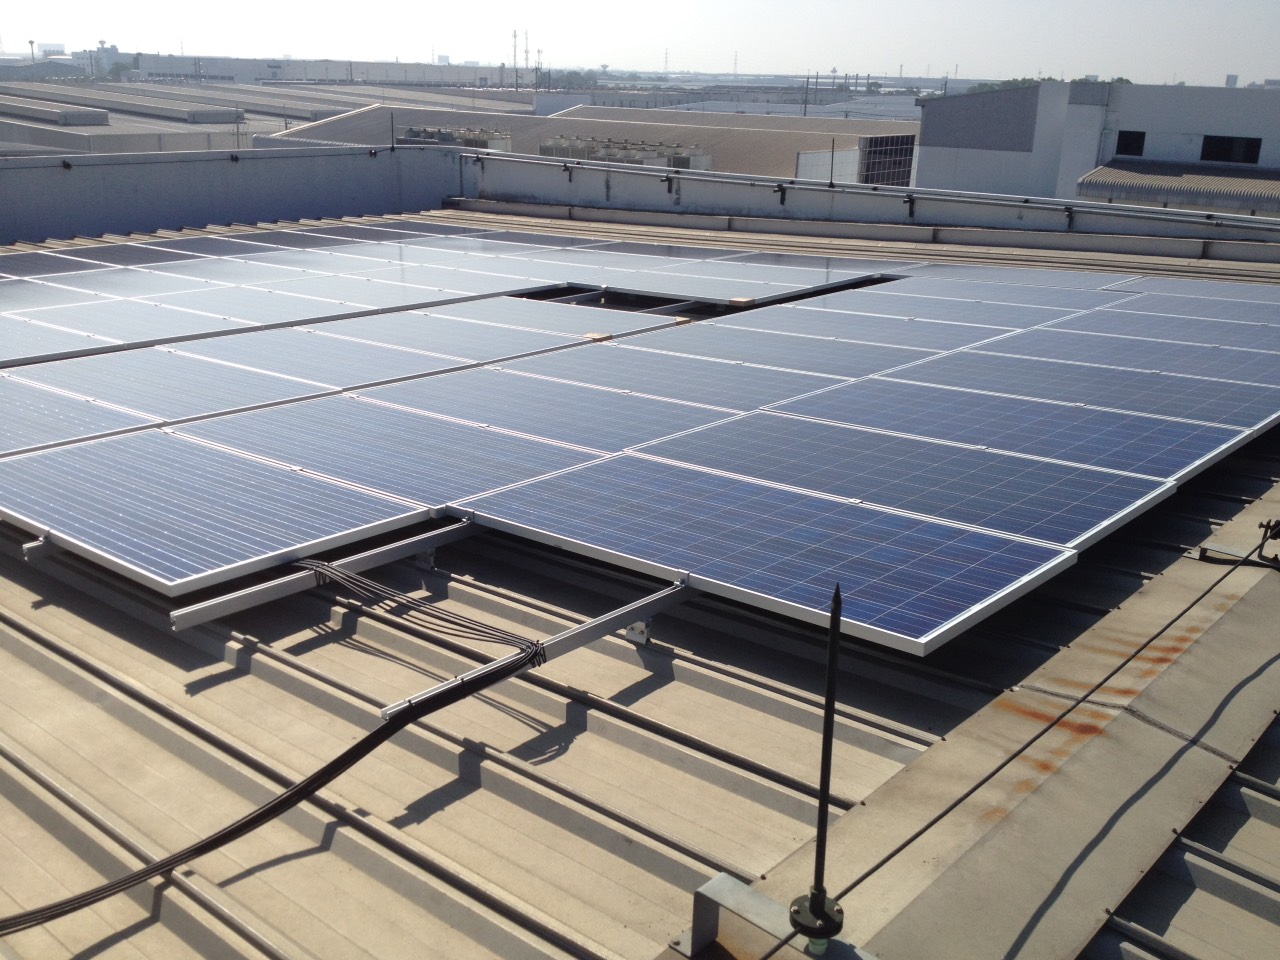 Soportes de montaje de panel solar Solución de inclinación ajustable para techoSoportes de montaje de panel solar Solución de inclinación ajustable para techo